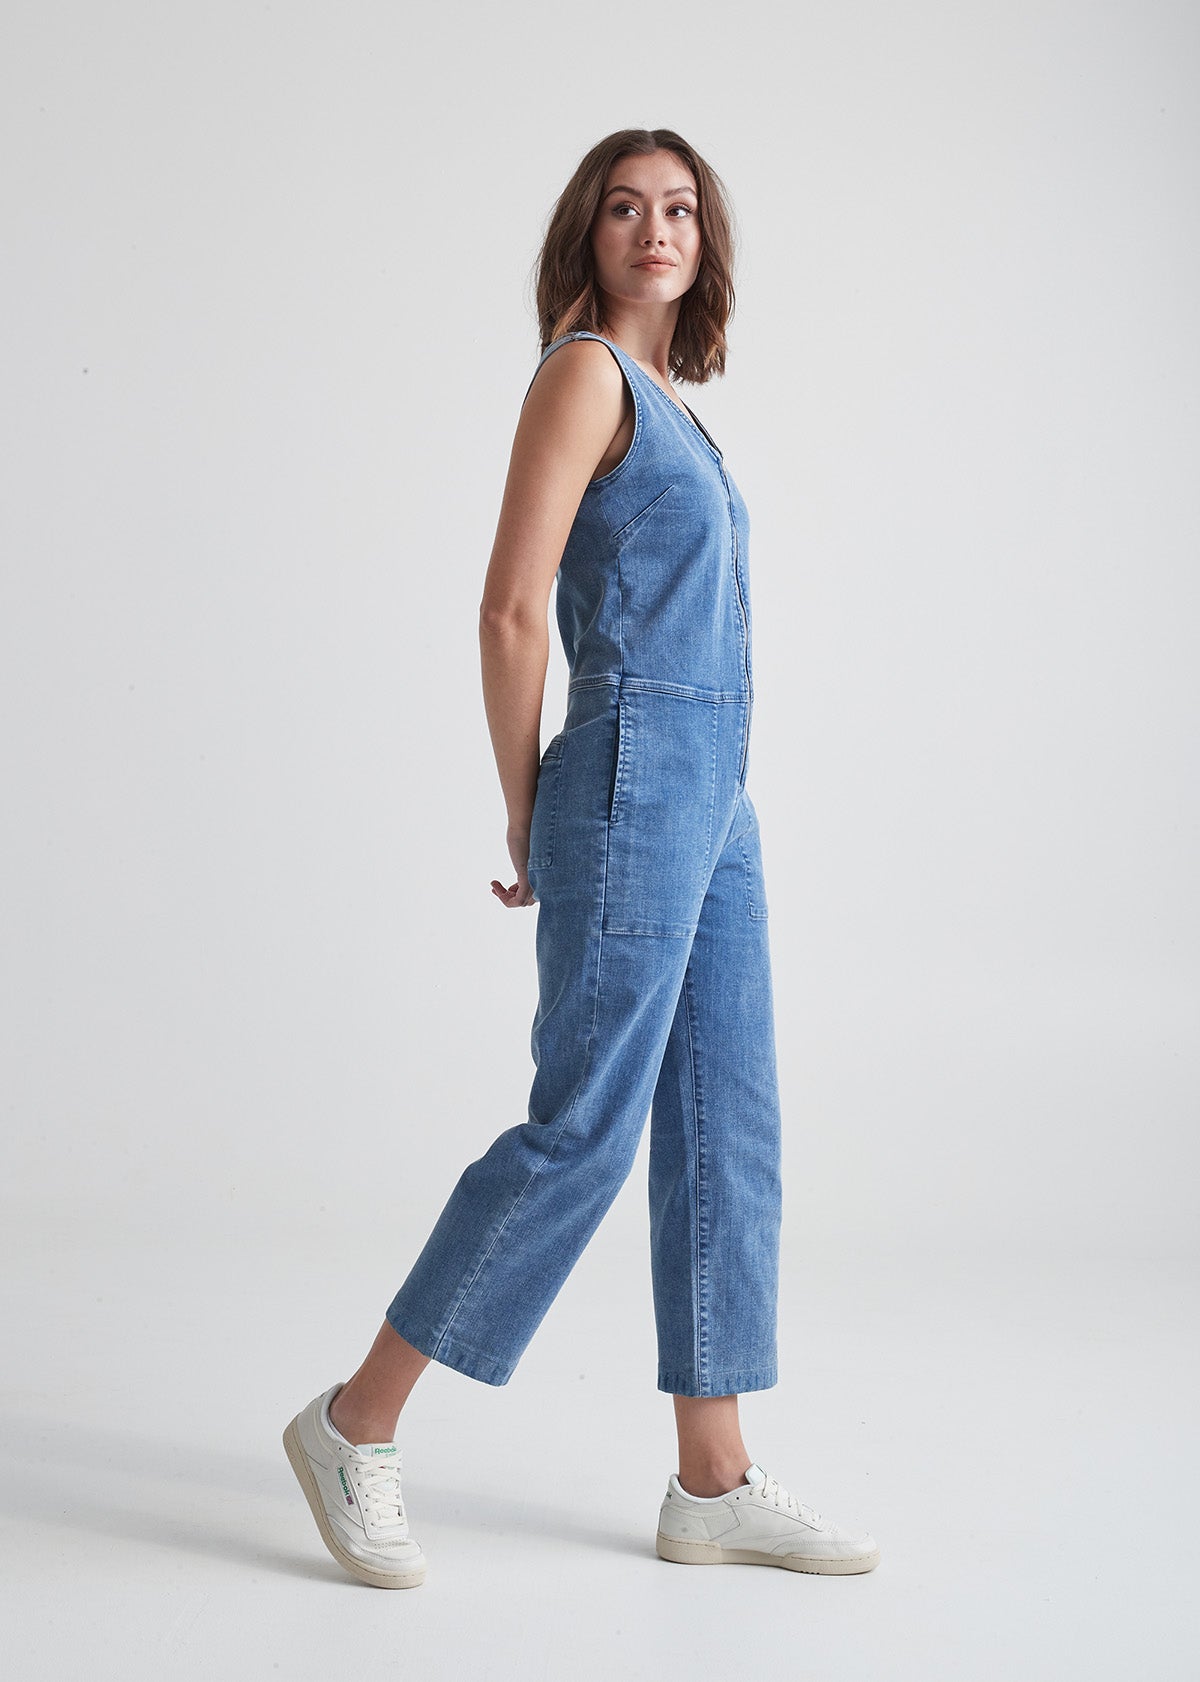 Women's 207 Vintage Jeans, Overalls Colors